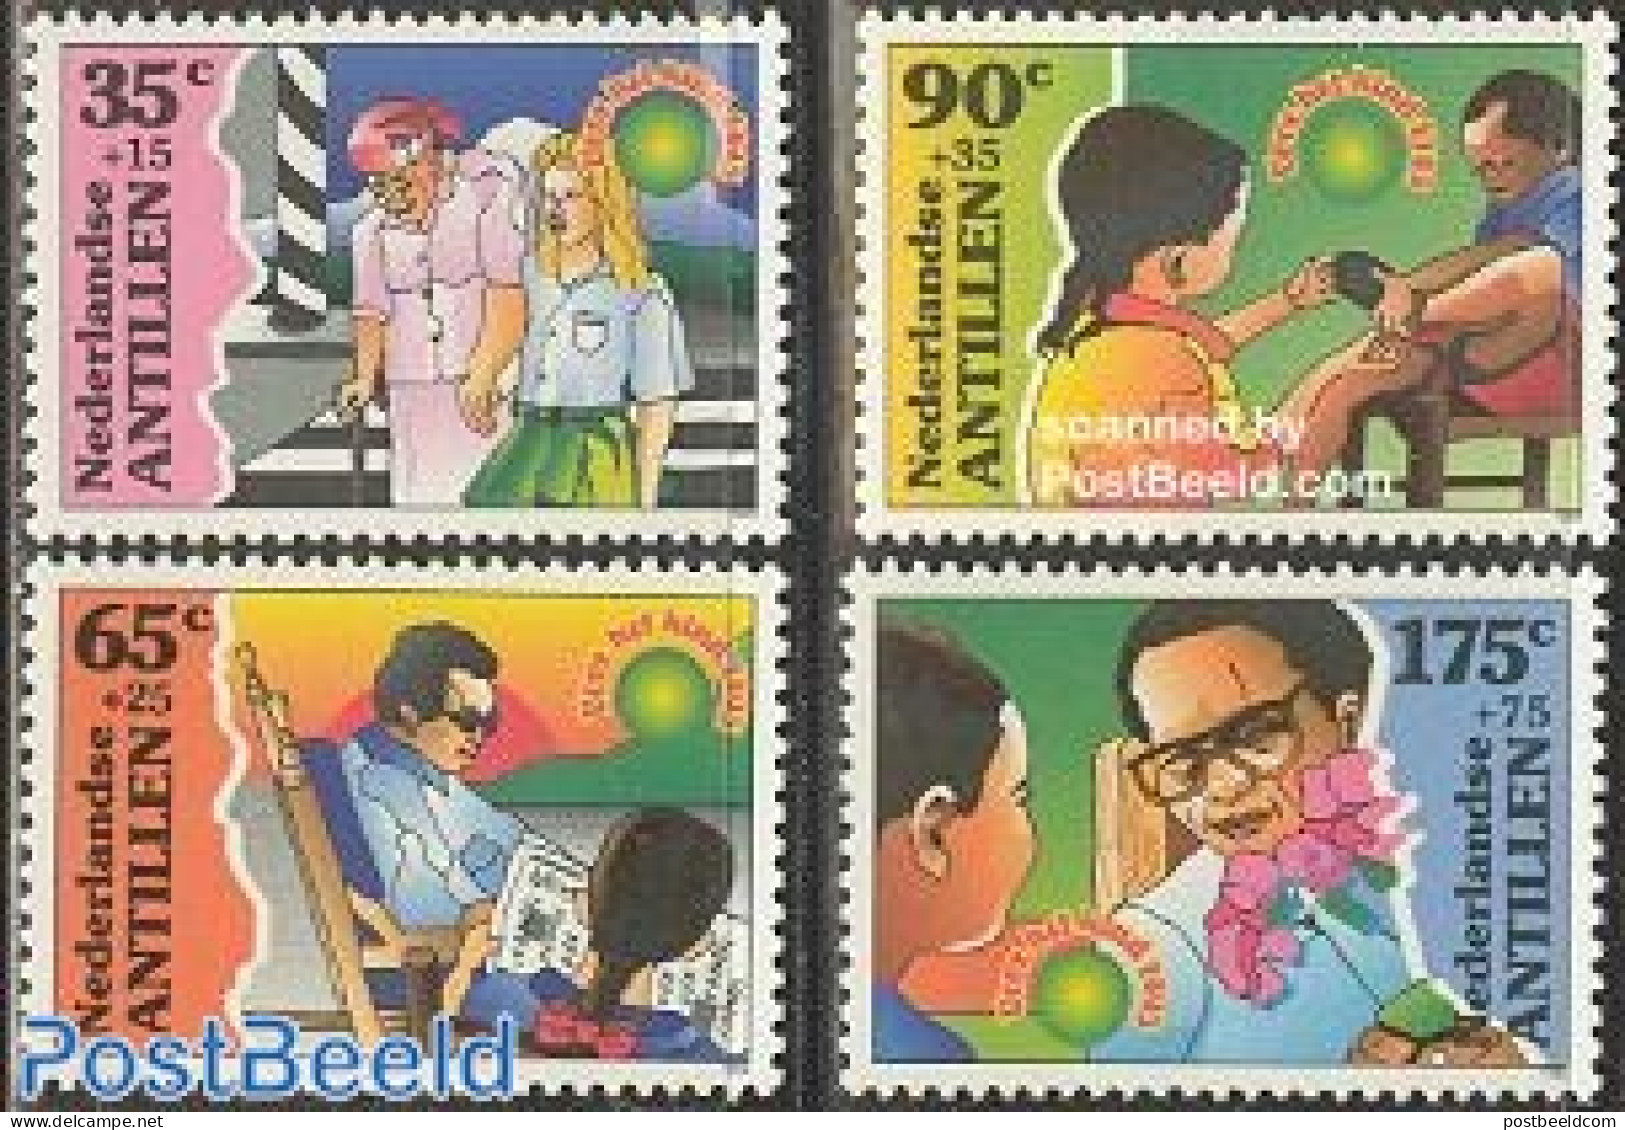 Netherlands Antilles 1995 Child Welfare 4v, Mint NH, Transport - Traffic Safety - Unfälle Und Verkehrssicherheit